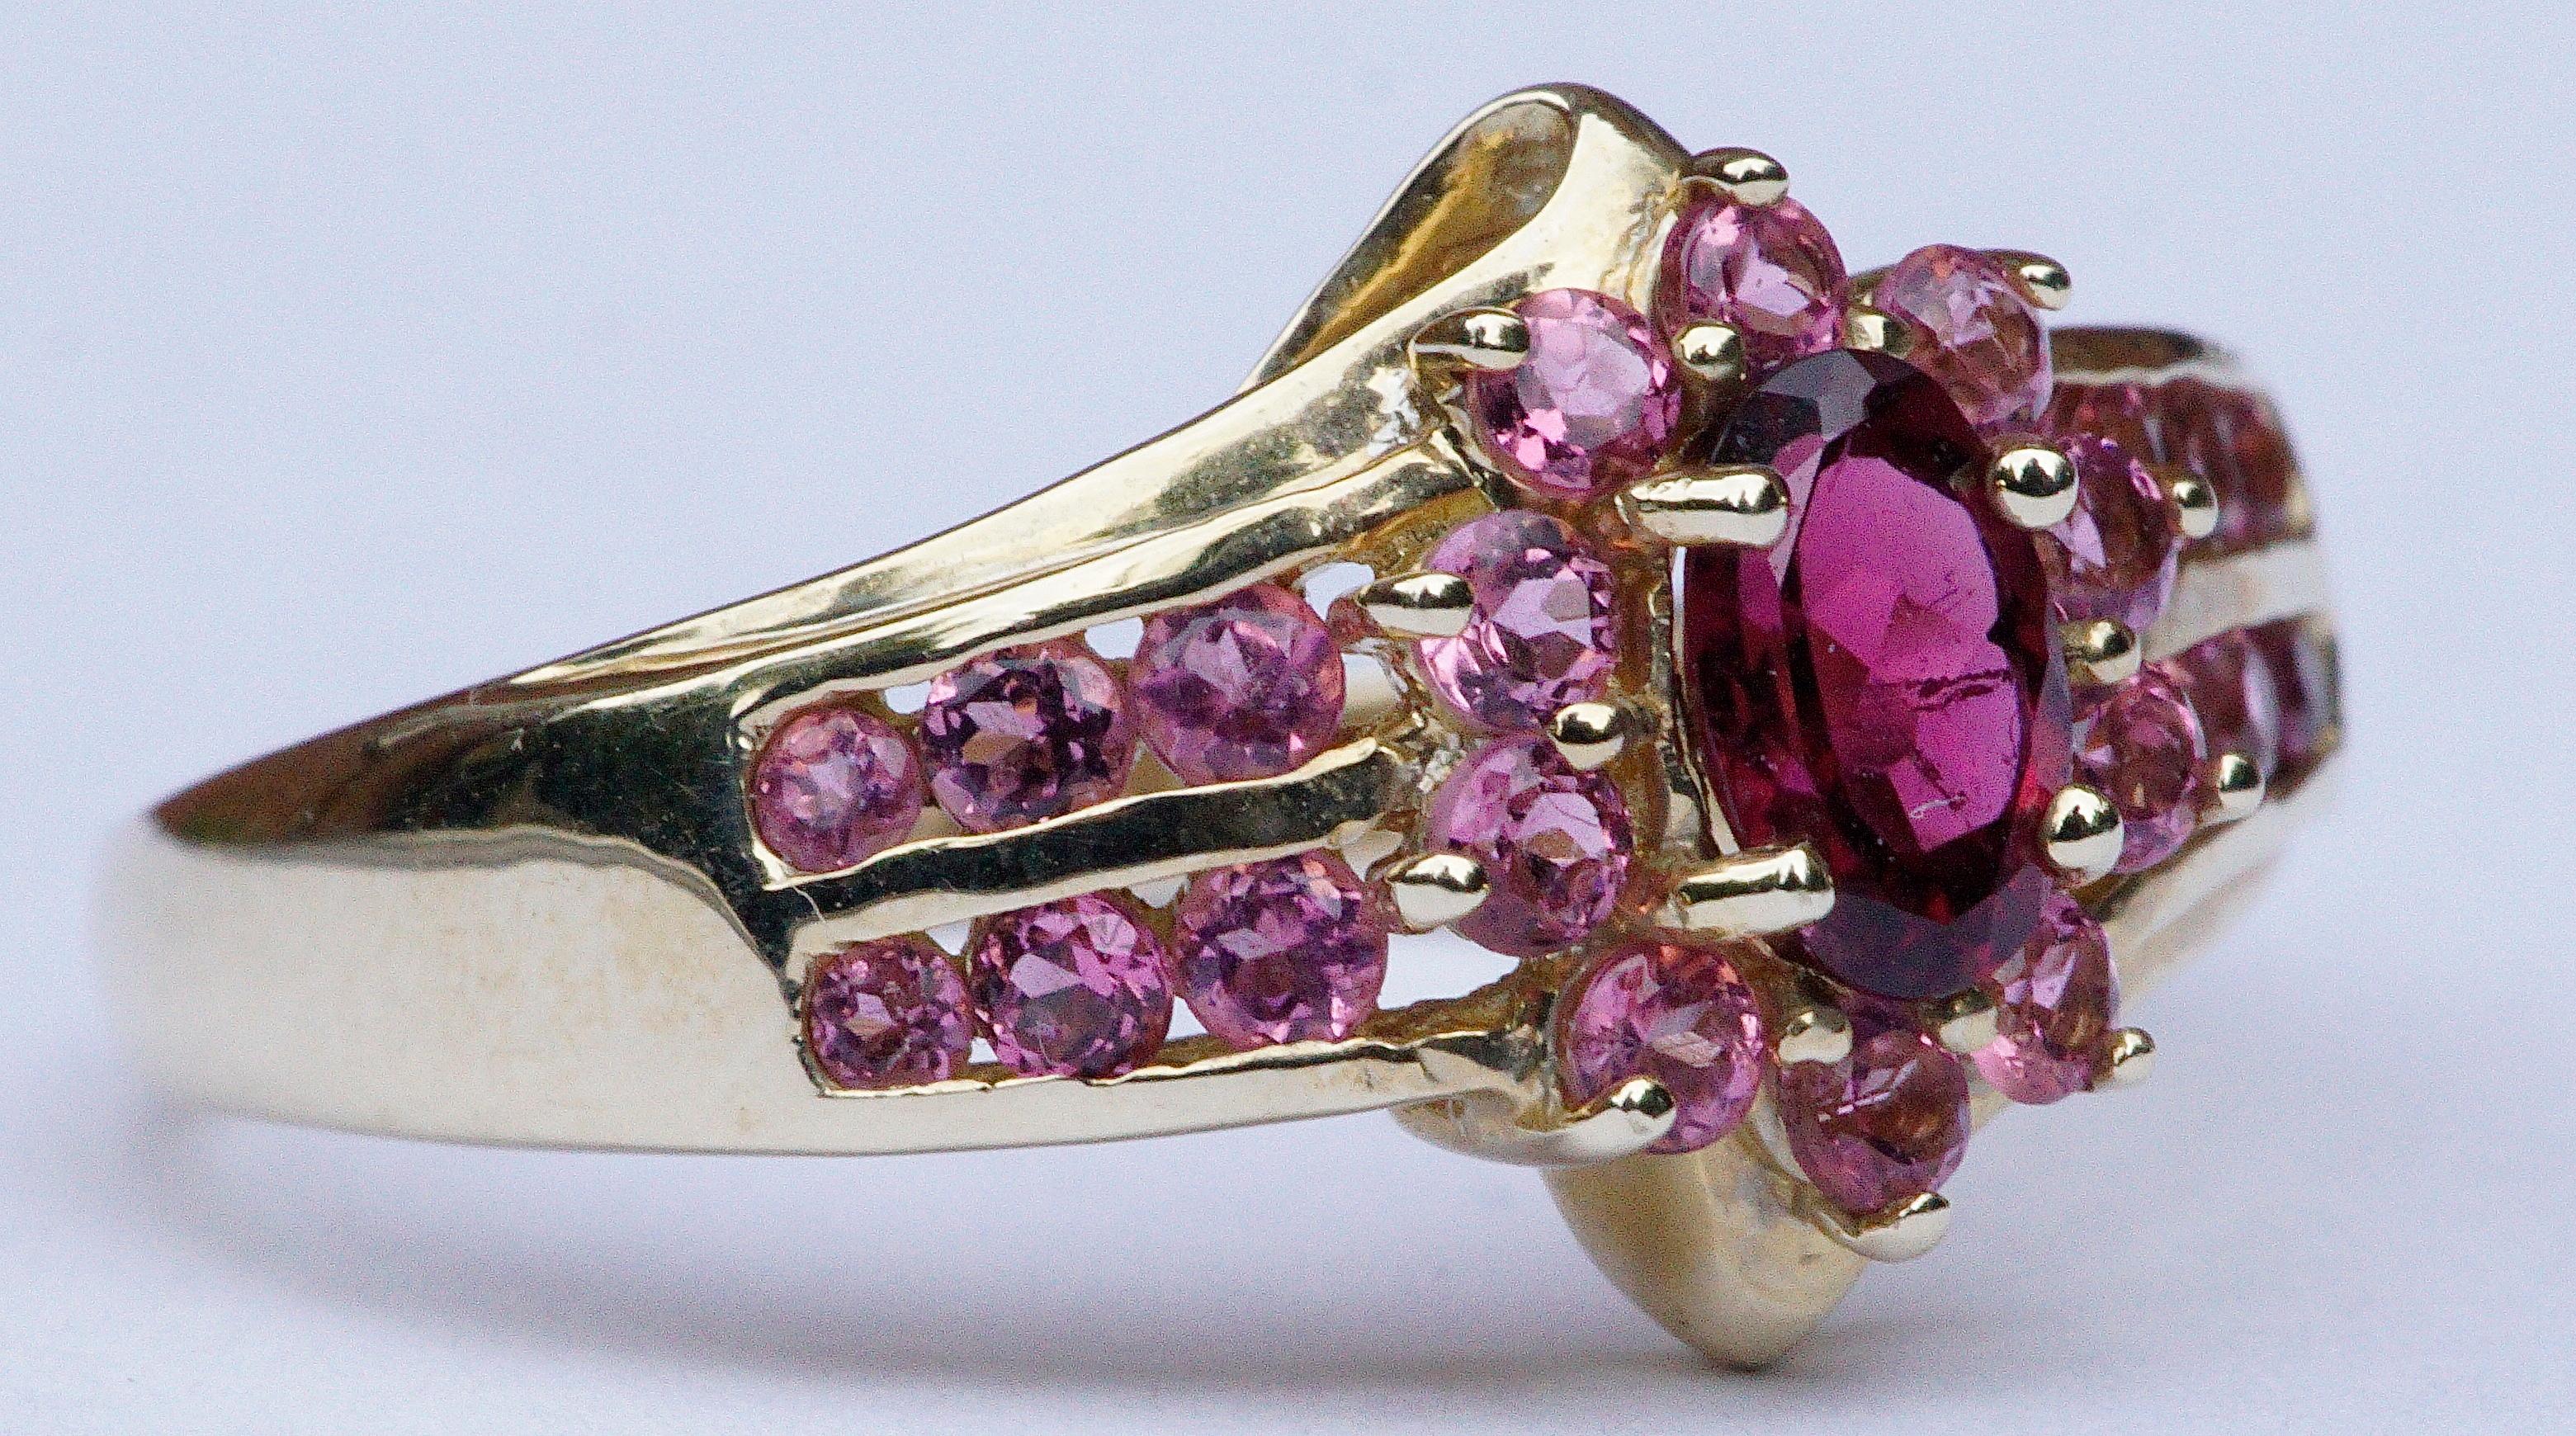 STS Jewels Inc. Qualität 14K Gold Ring, mit einem facettierten tief rosa natürlichen Turmalin, und zweiundzwanzig hellrosa Edelsteine. Zwölf der facettierten hellrosa Steine sind kanalgefasst, sechs auf jeder Seite, und zehn sind in einem Cluster um